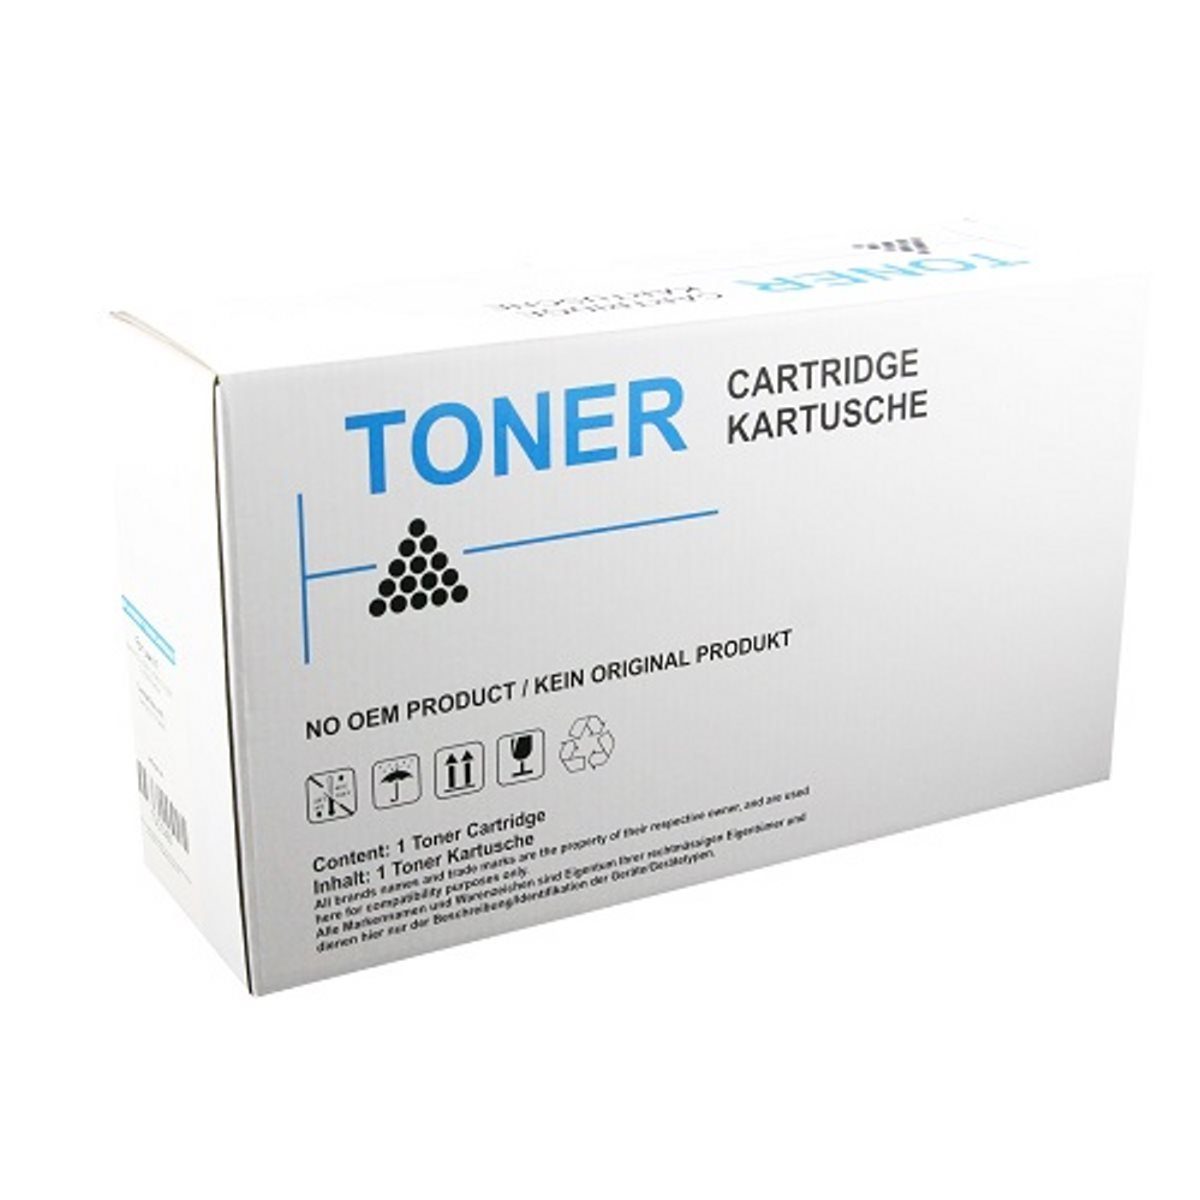 Magenta Toner Ecosys 7040cdn Tonerkartusche, P TK-5160 Kompatibler für für Kyocera ABC